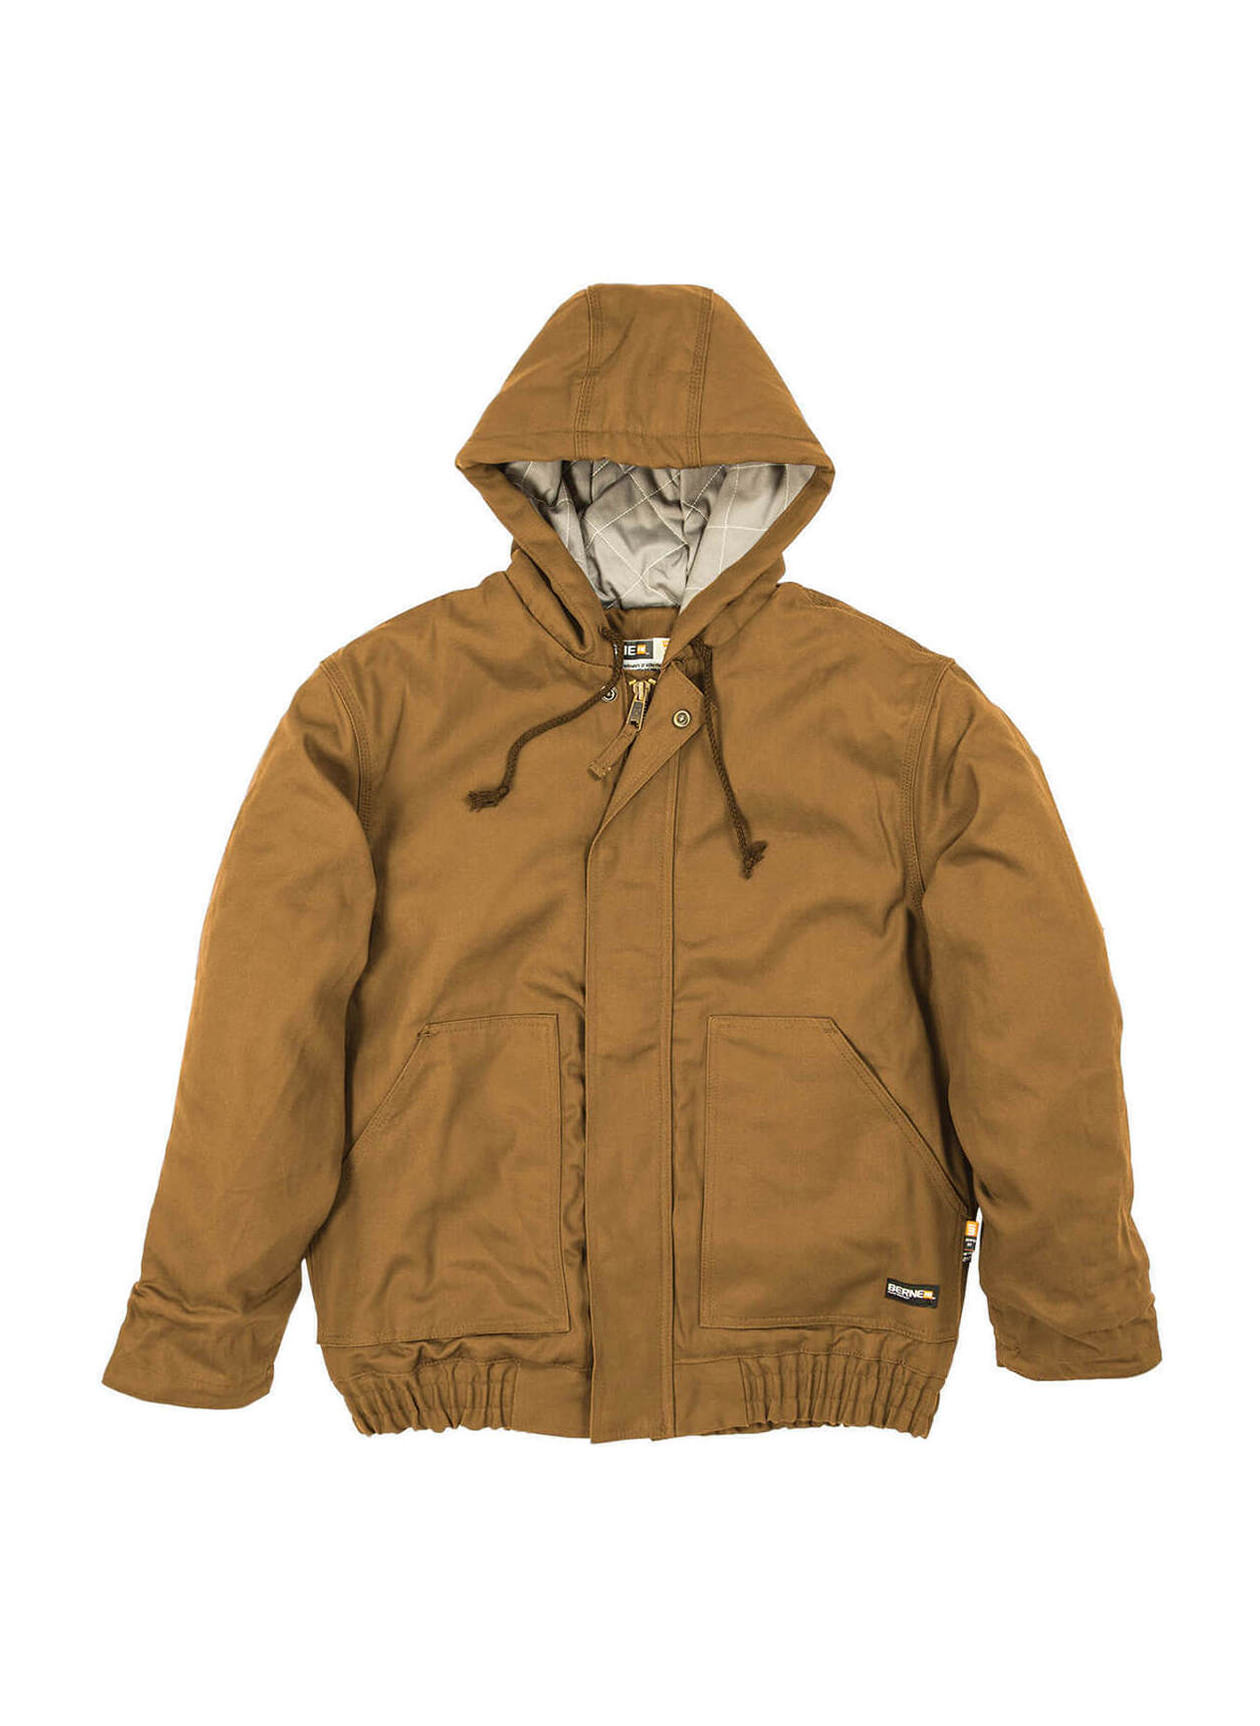 Berne Men's Brown Duck Flame-Resistant Hooded Jacket